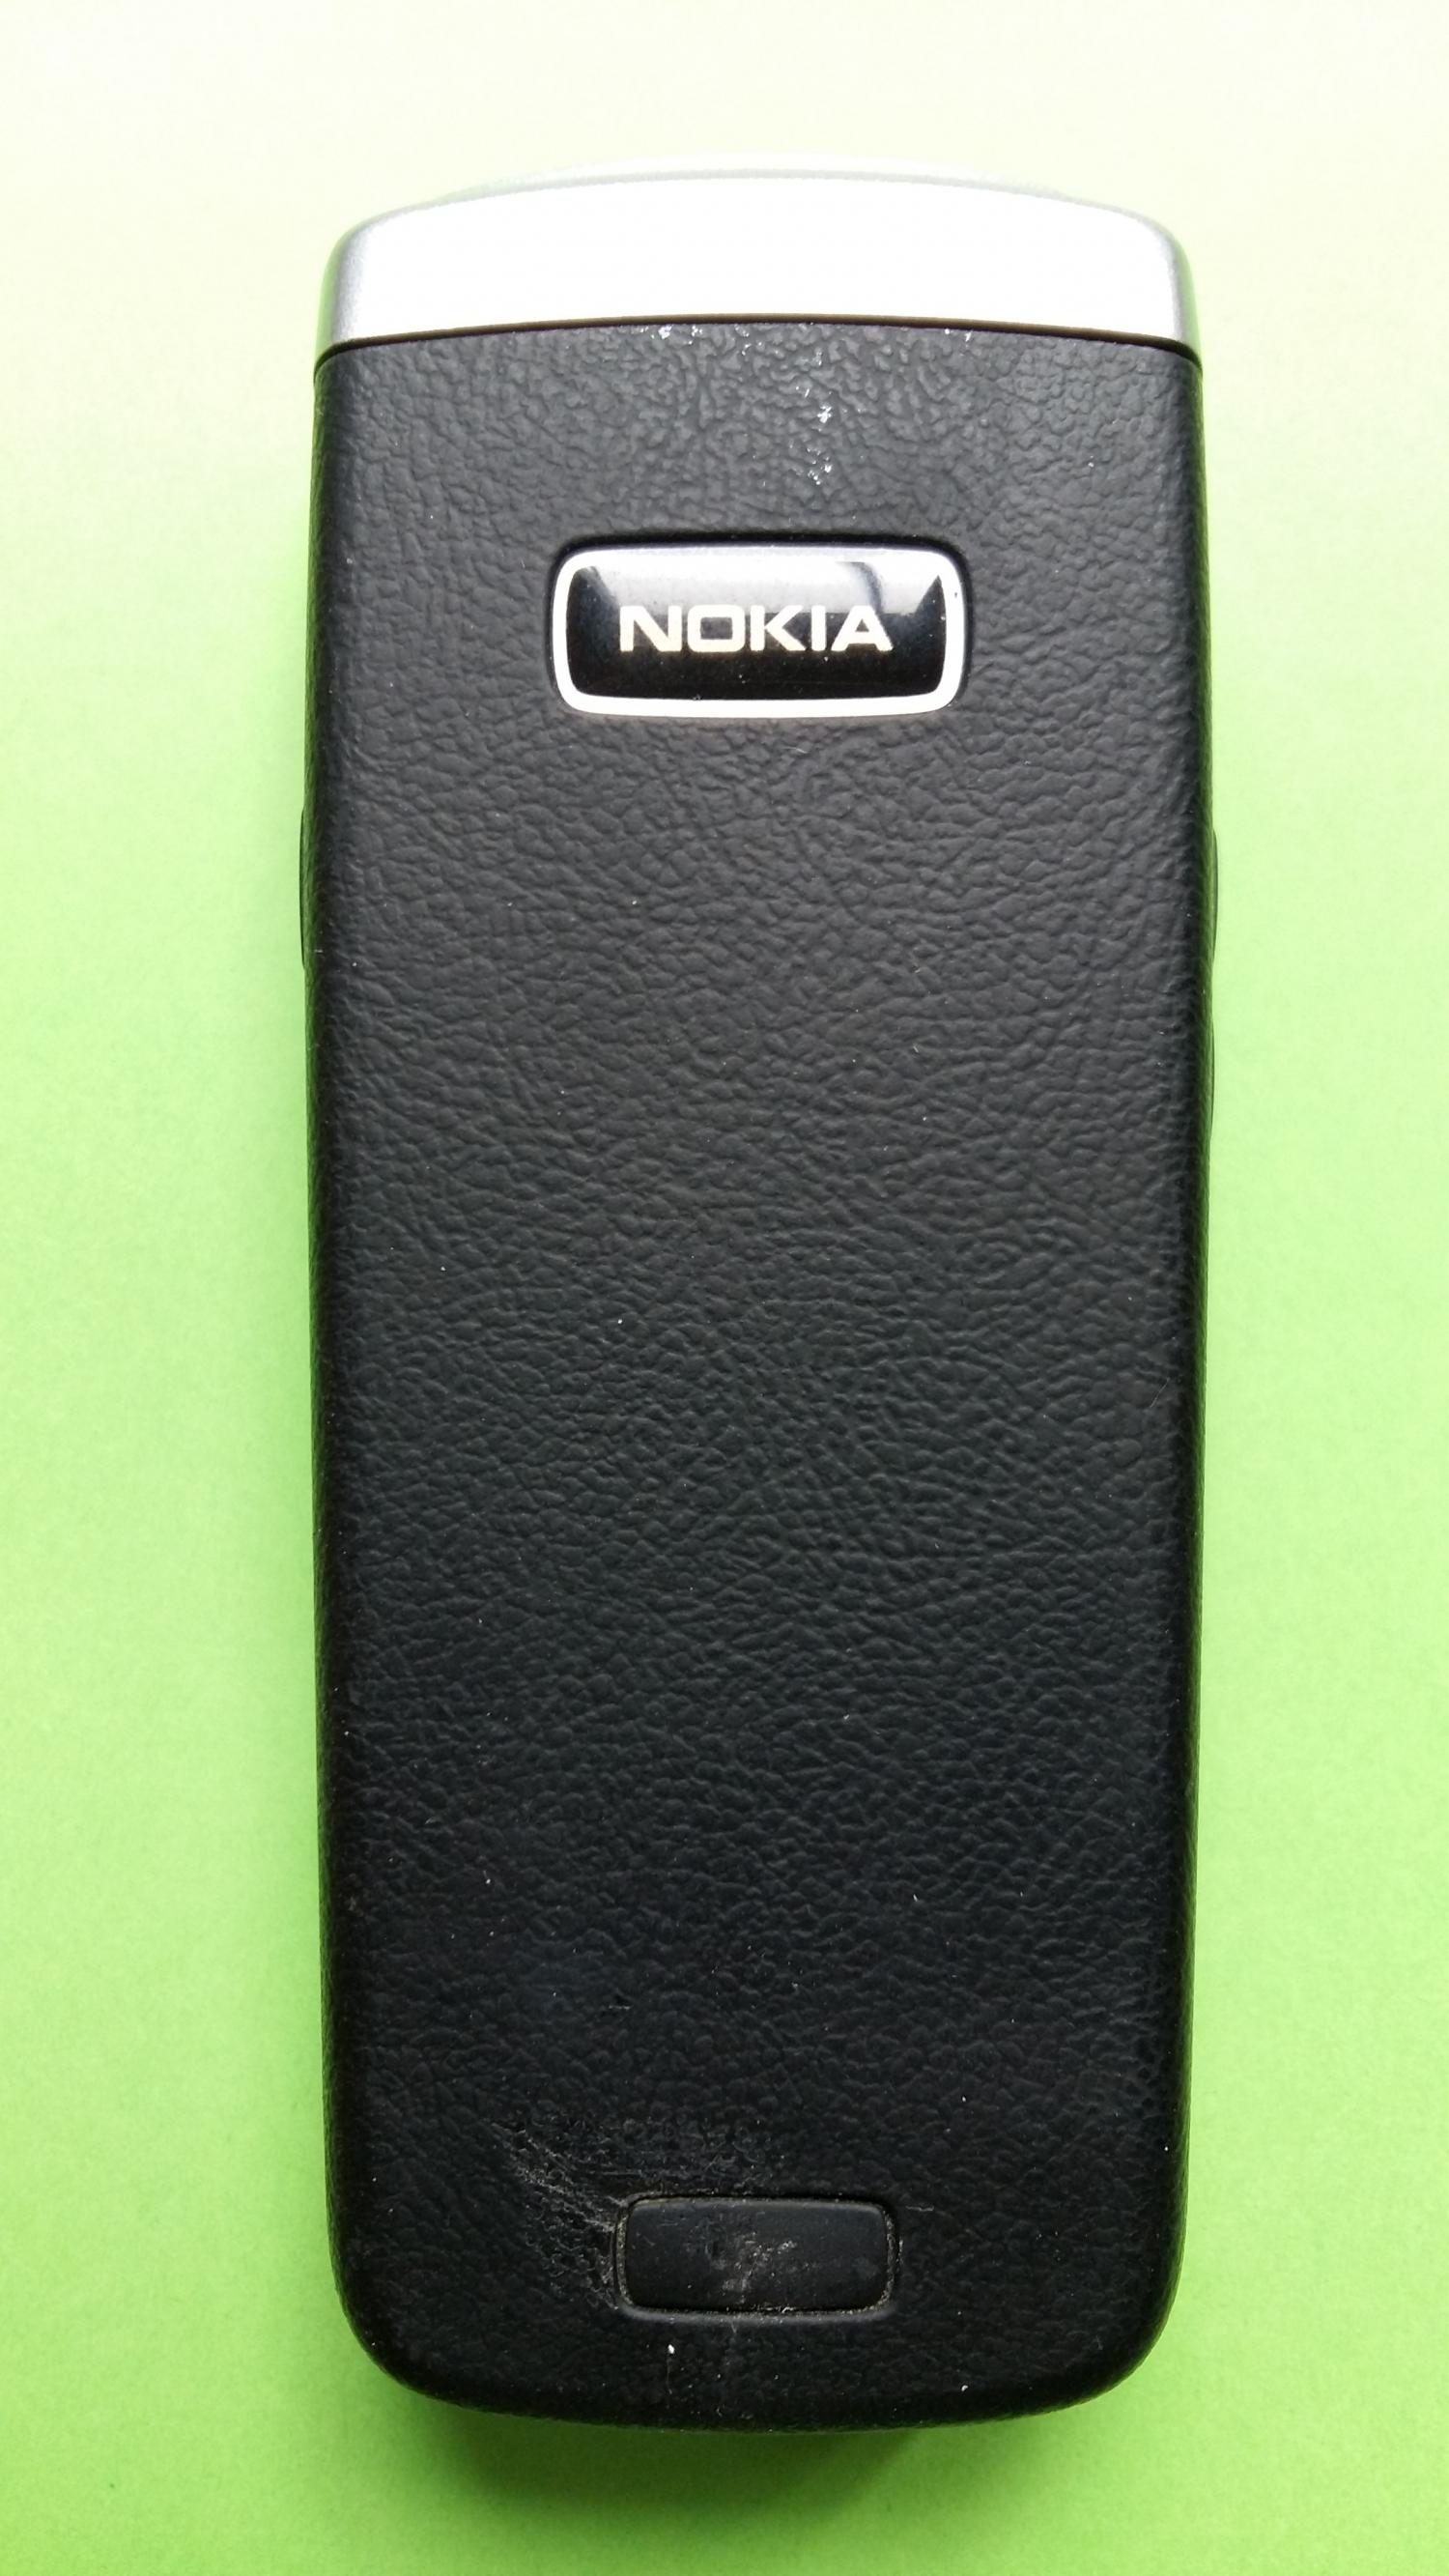 image-7307506-Nokia 6021 (2)2.jpg